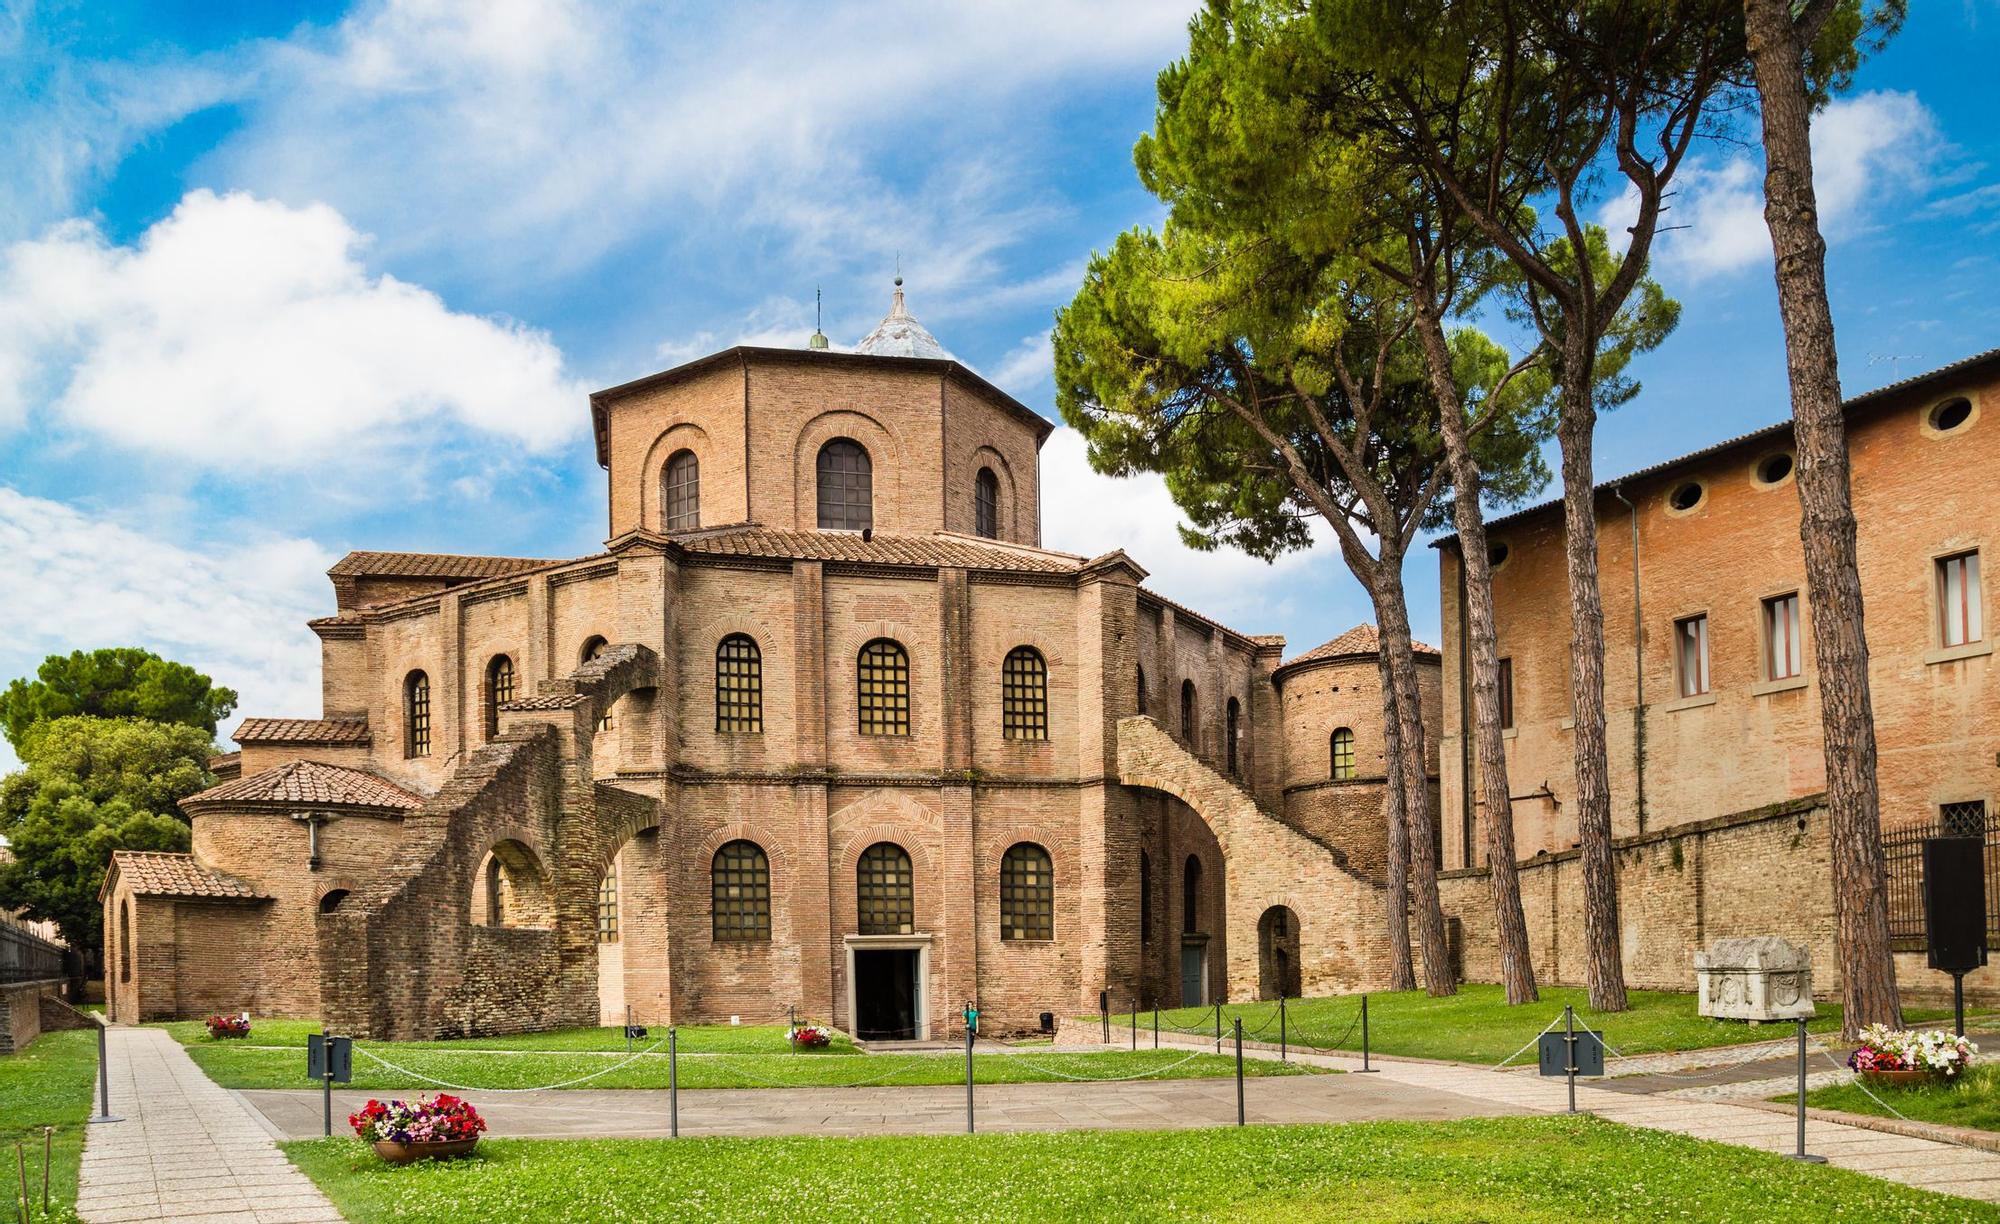 La Iglesia de San Vitale en Ravenna es una de las paradas indispensables en una ruta por Emilia - Romaña